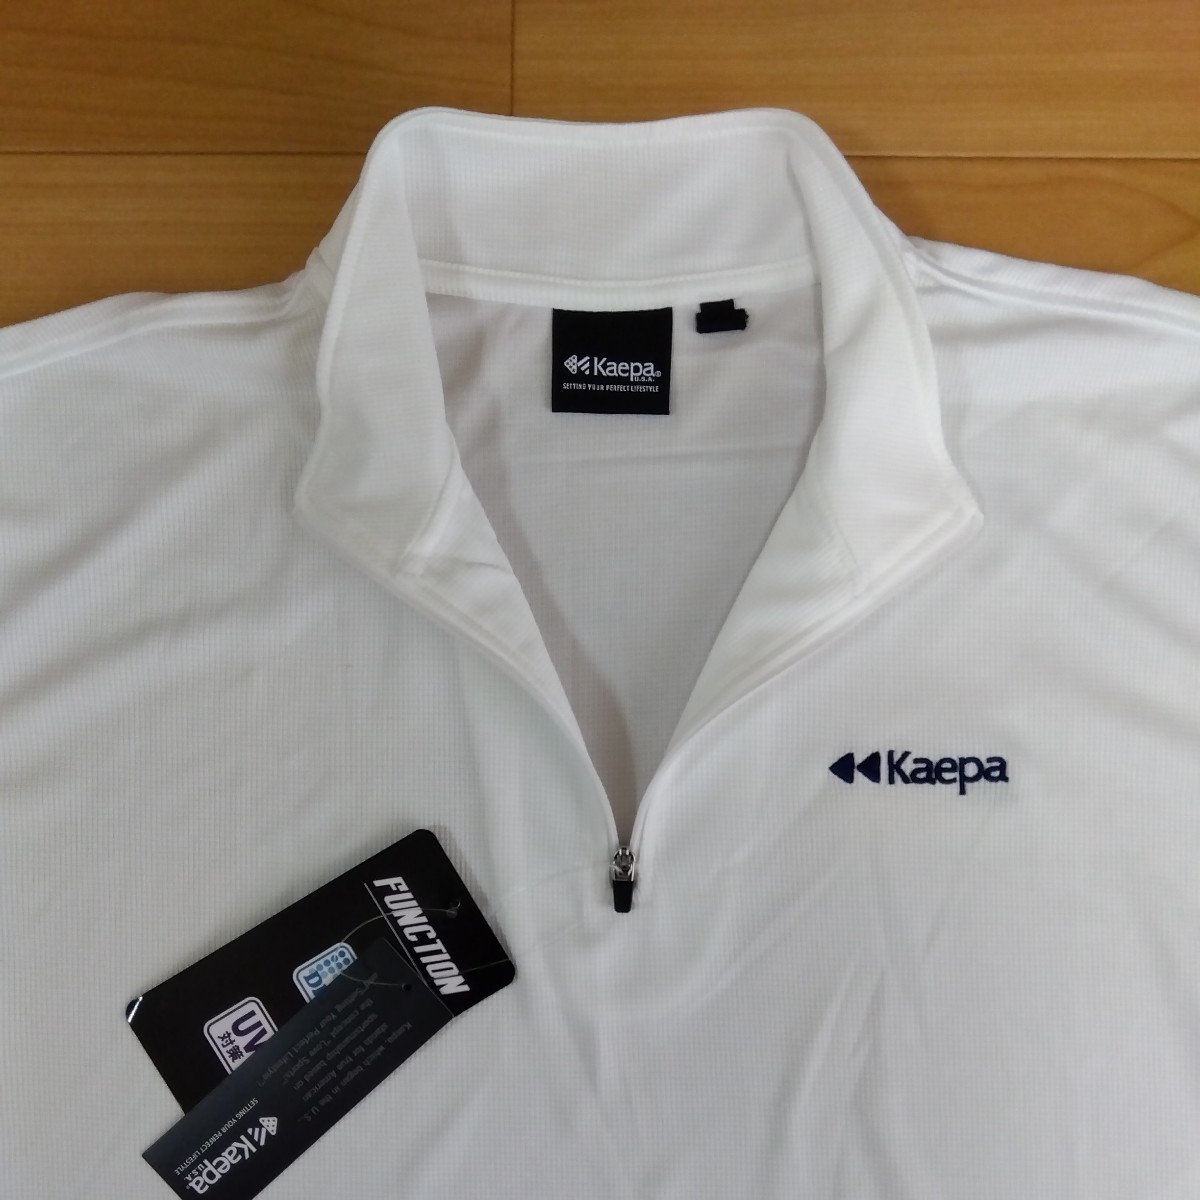 M ①Kaepa ケイパ 新品 半袖ポロシャツ 襟付きトップス ハーフジップ 白 メンズ紳士 アウトドア スポーツ ゴルフウェア ドライ UV対策 golf